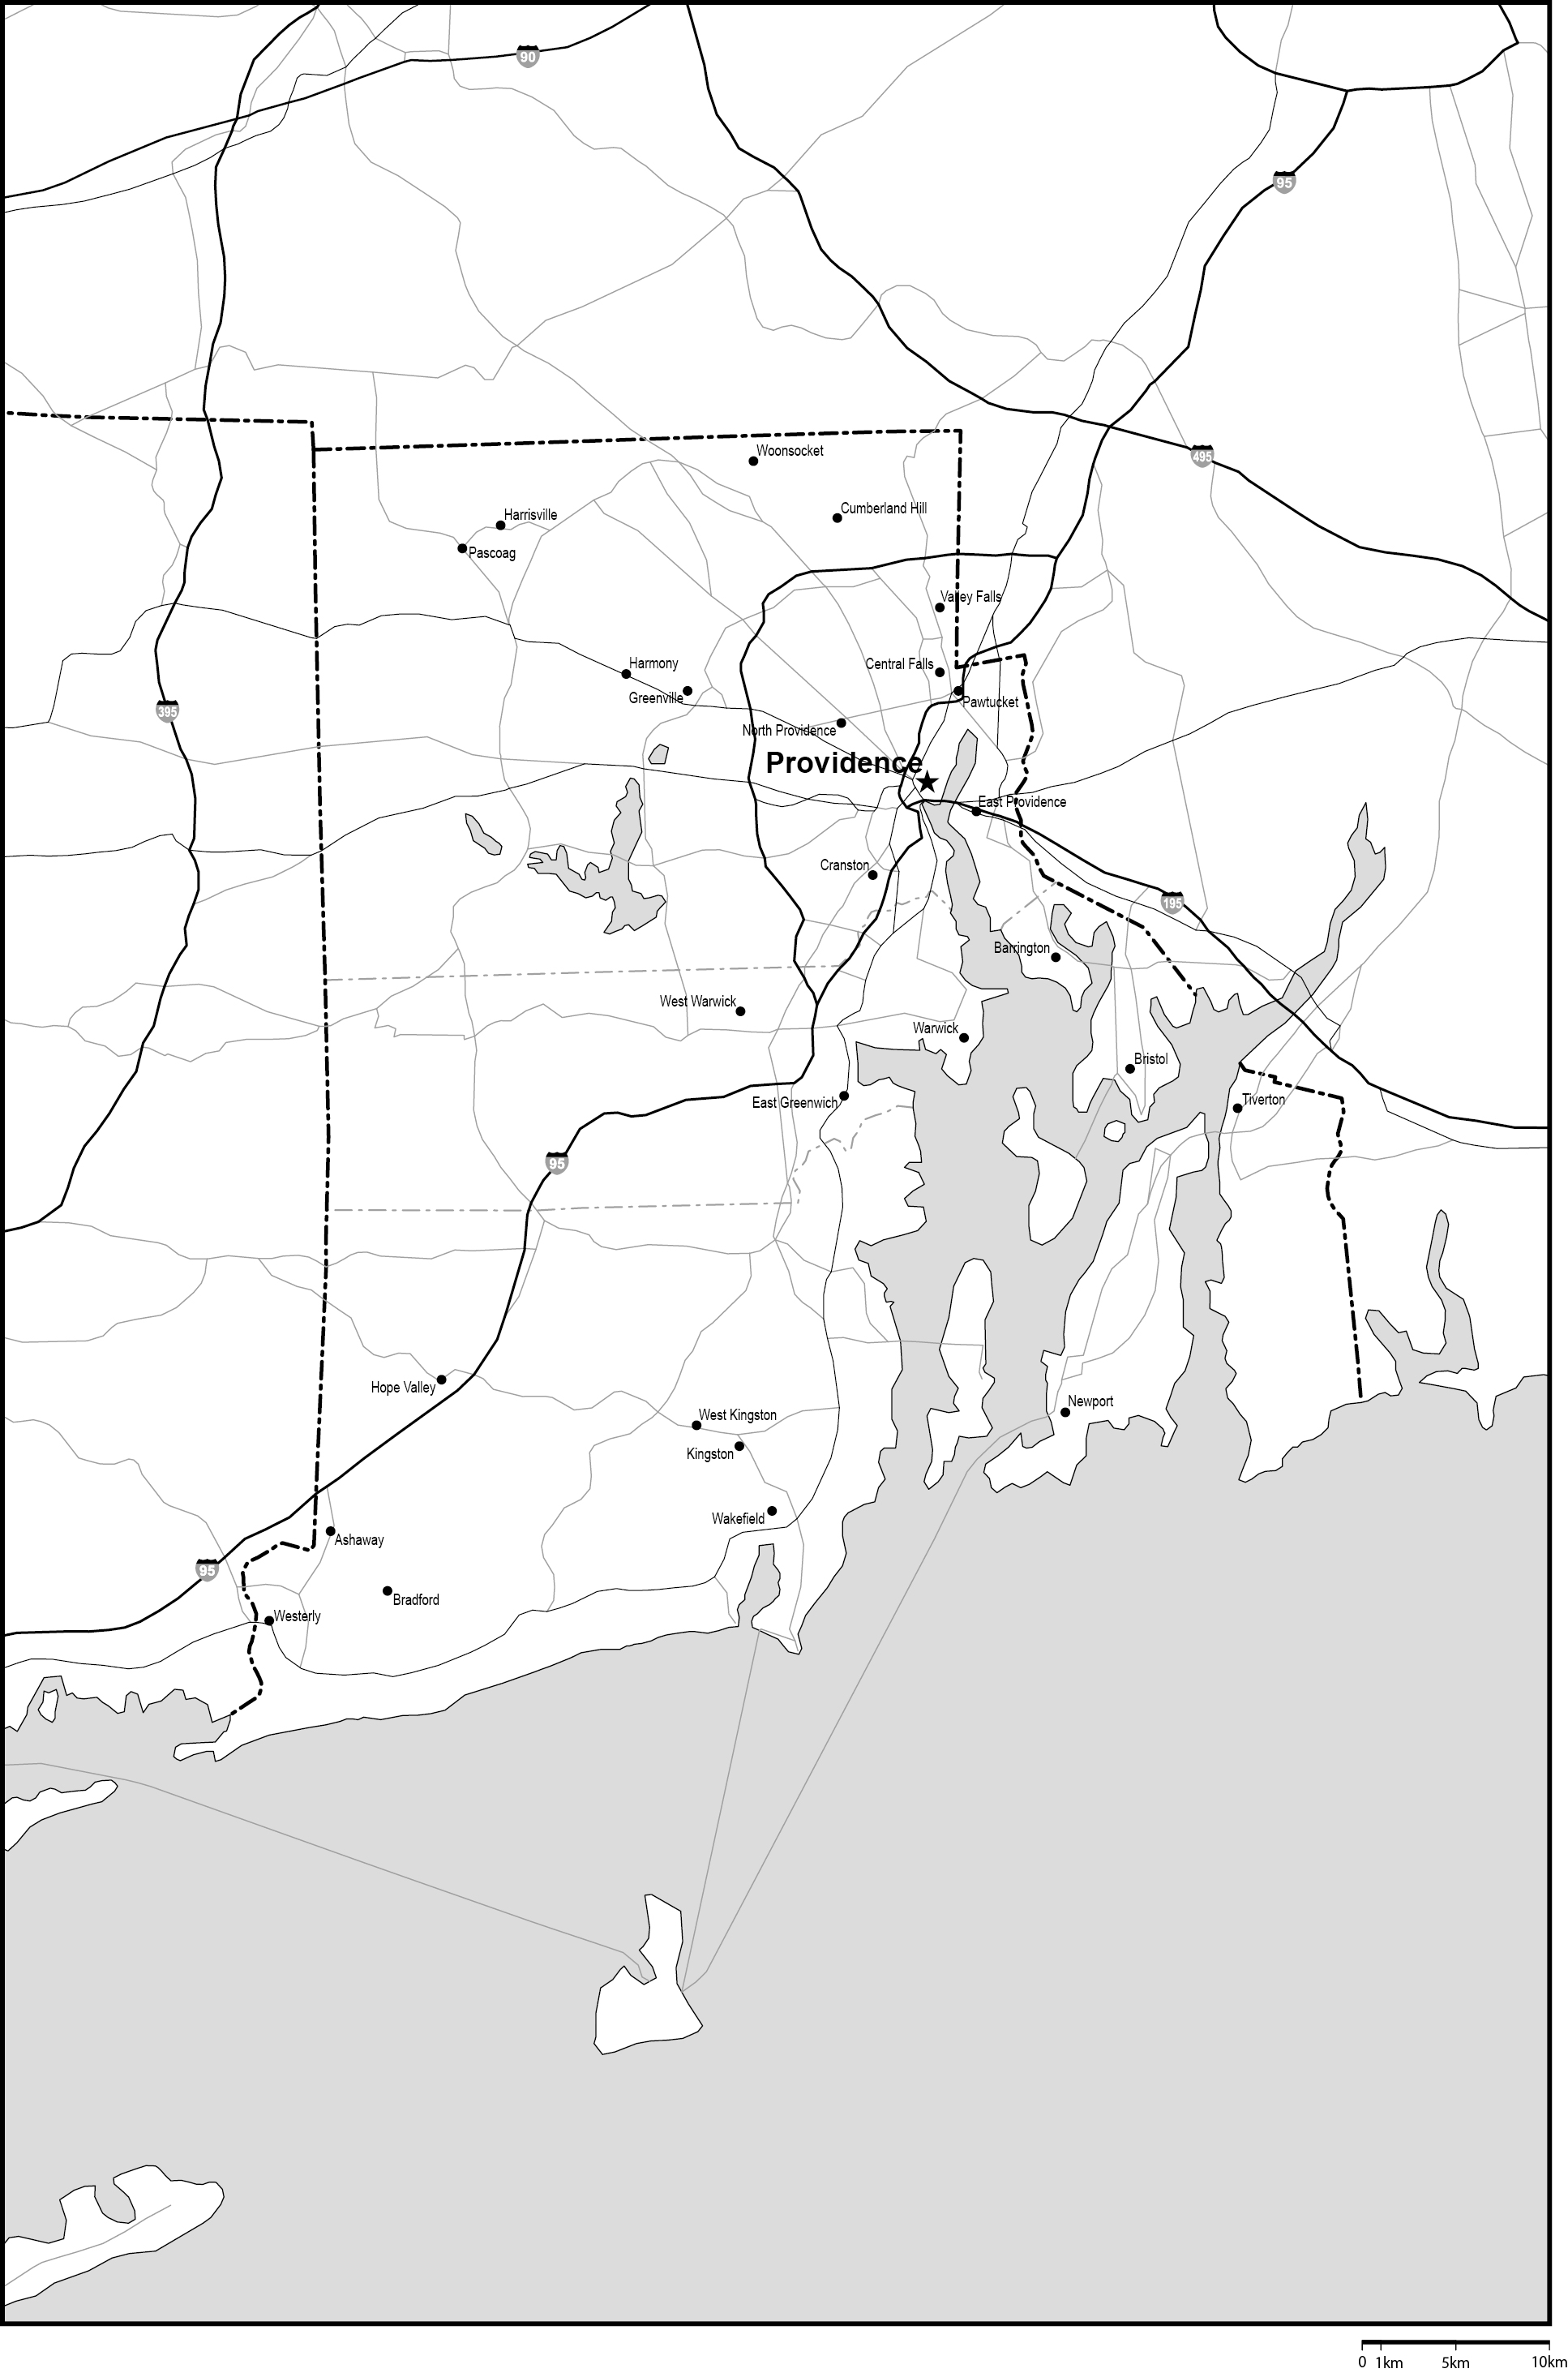 ロードアイランド州郡分け白地図州都・主な都市・道路あり(英語)フリーデータの画像